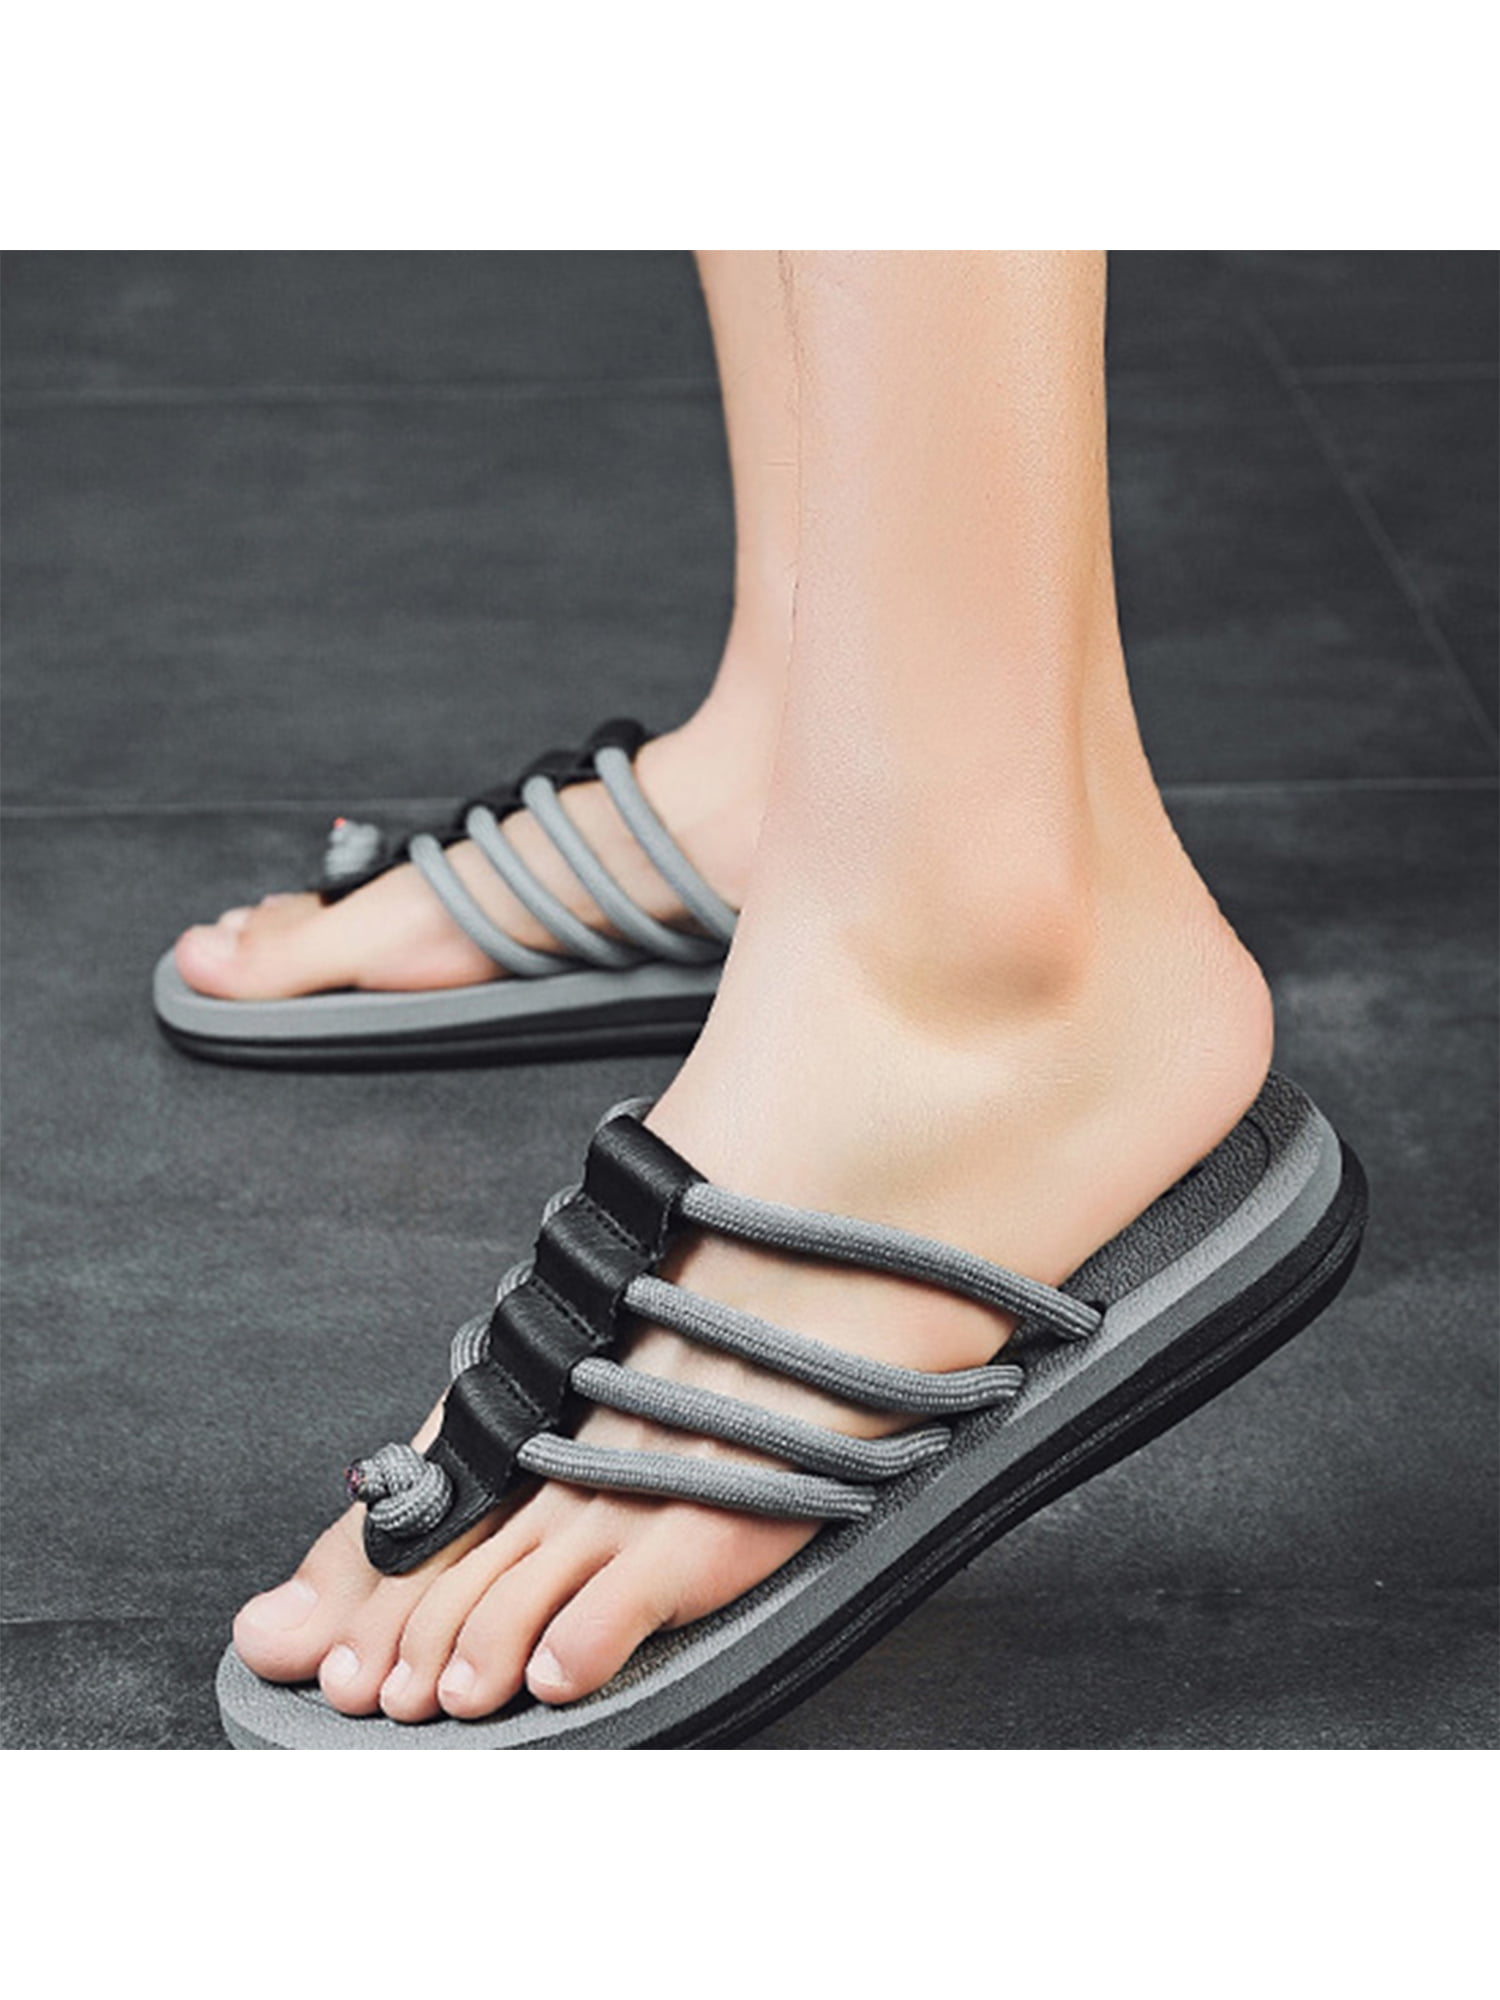 Mens Shoes Sandals slides and flip flops Sandals and flip-flops Island Slipper Thong Leather Black for Men 